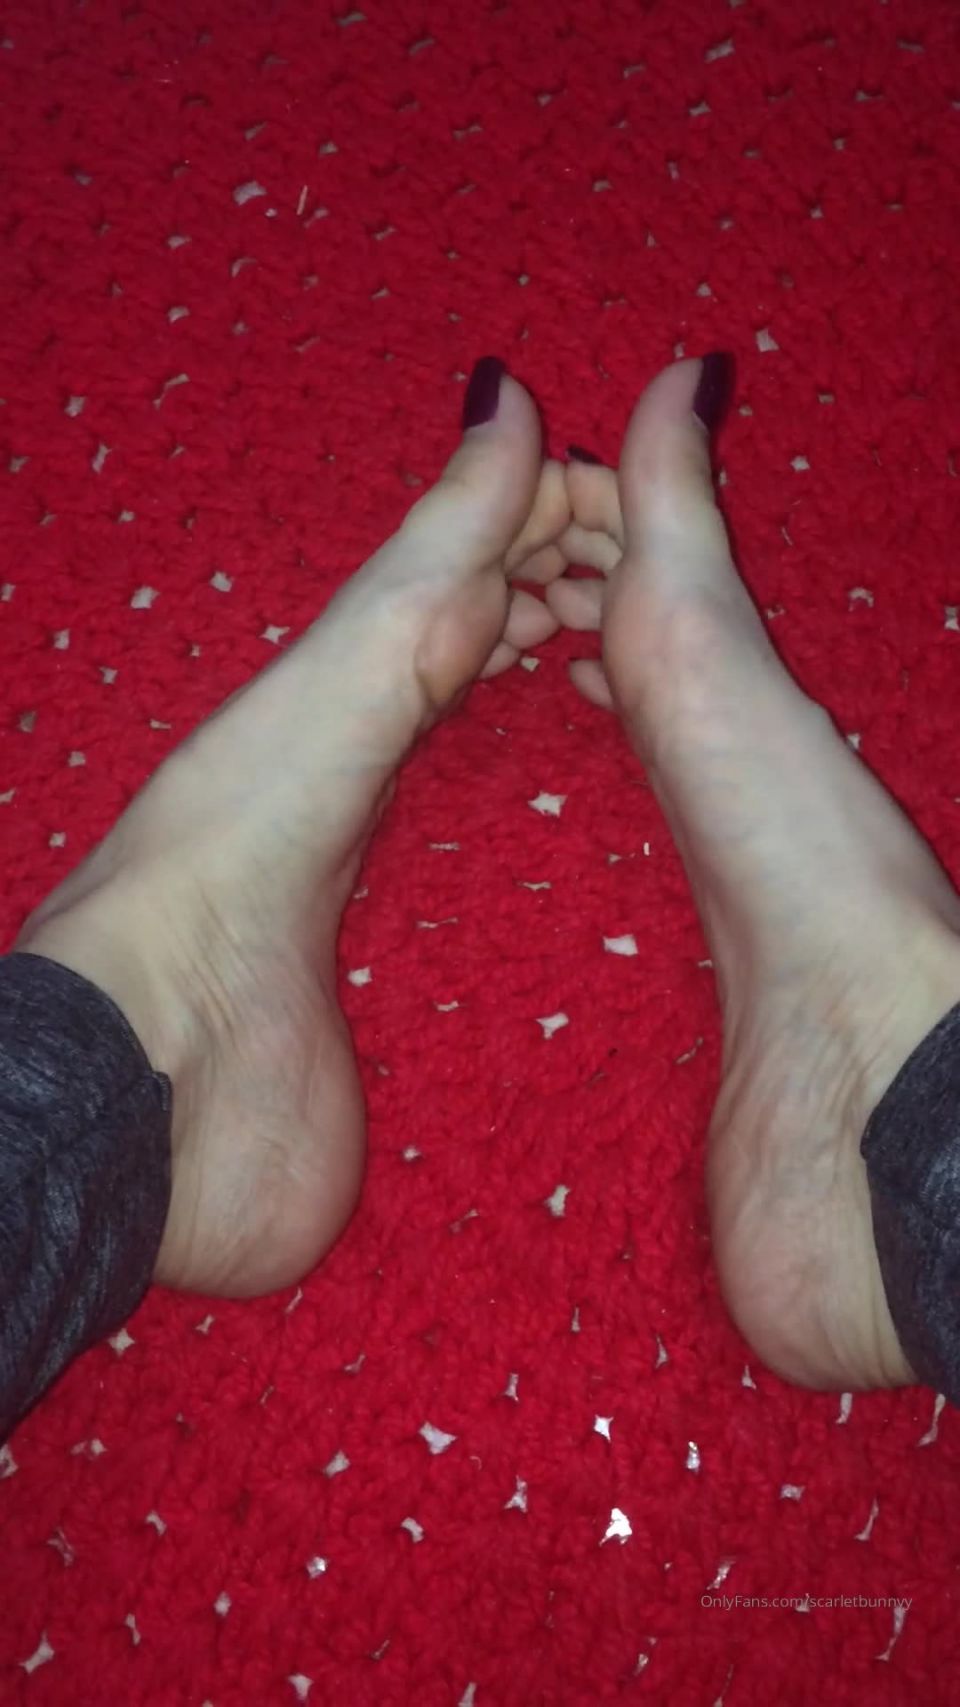 ScarletBunny () Scarletbunnyy - spreading feet foot scarletbunny 13-08-2020